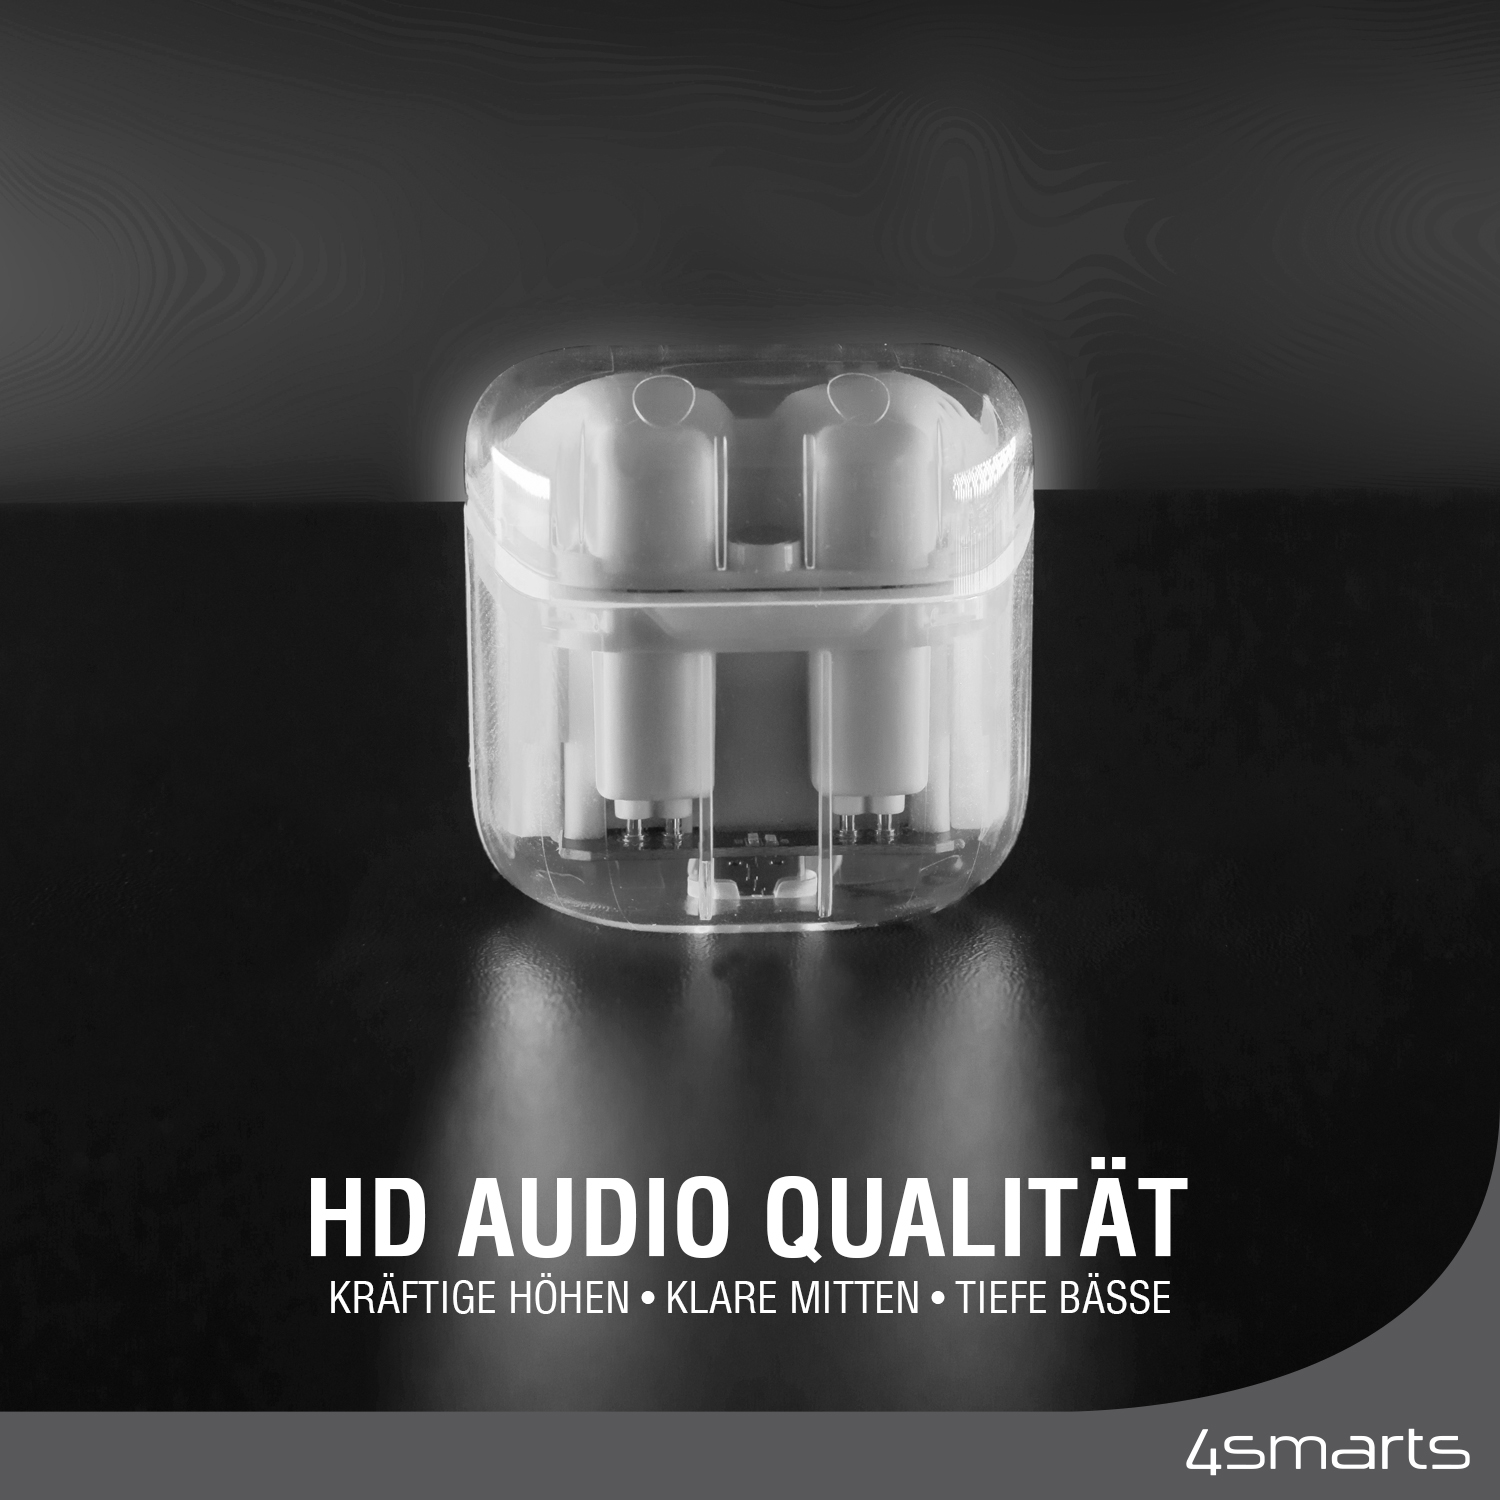 True wireless in ear Kopfhörer besitzen extrem gute HD Audio Qualität.